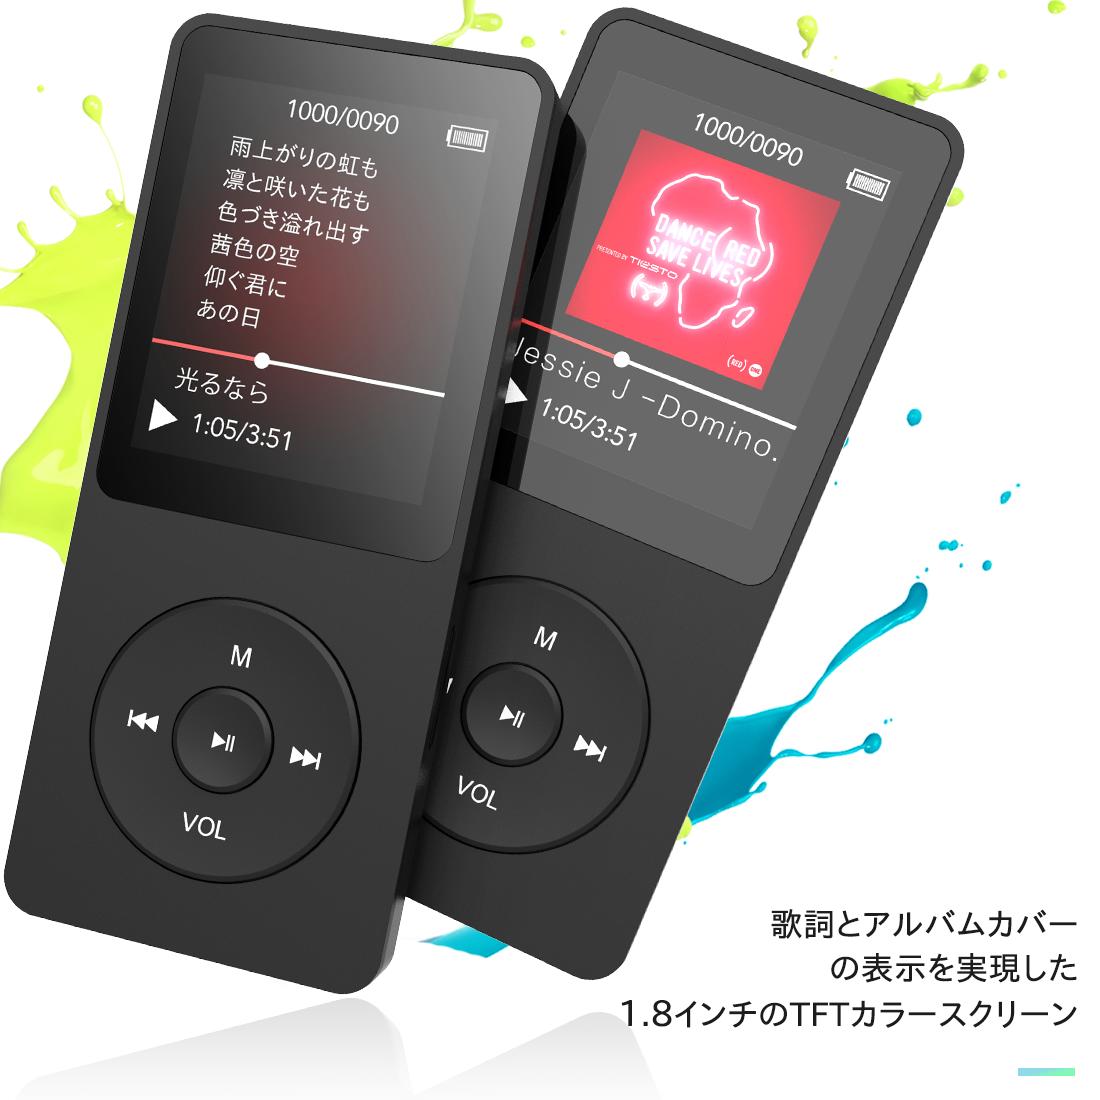 楽天市場 送料無料 Agptek Bluetooth Mp3プレーヤー Hifi高音質 超軽量 A Bリピート語学機能 歩数計 Fmラジオ 多機能 内蔵16gb マイクロsdカード128gbまで対応 A02st Bluetooth 進級版 Mp3プレイヤー 音楽プレーヤー ミュージックプレイヤー 軽量 ブラック Good